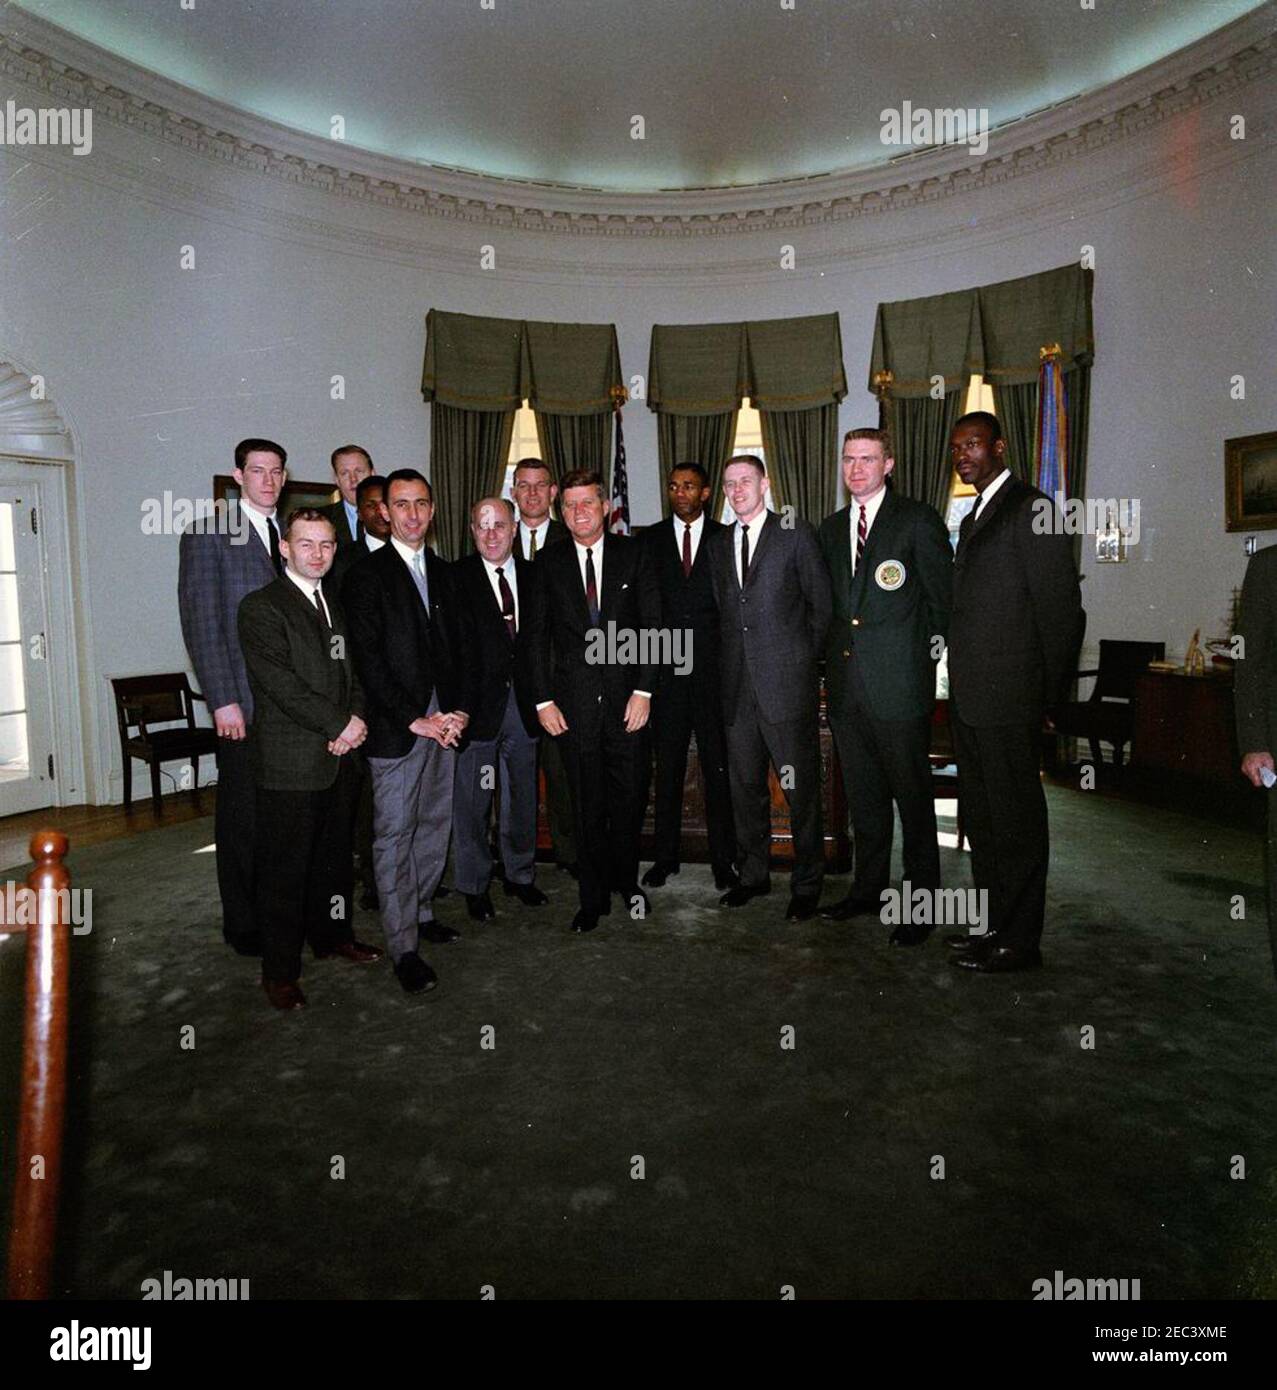 Visite de l'équipe de basket-ball Boston Celtics, 13:00. Les membres de l'équipe de Boston Celtics de la National Basketball Association (NBA) visitent le Président John F. Kennedy dans le Bureau ovale lors d'une visite de la Maison Blanche. (G-D) Edward G. u0022Buddyu0022 Leroux, Jr.; John Havlicek (à l'arrière); Bob Cousy; K. C. Jones (partiellement caché derrière M. Cousy); Clyde Lovellette (à l'arrière); Coach Red Auerbach; Jim Lostoff (à l'arrière); Président Kennedy; Sam Jones; Frank Ramsey; Tom Heinsohn; Tom Sanders et Tom. Washington, D.C. [les rayures et la décoloration sont originales au négatif.] Banque D'Images